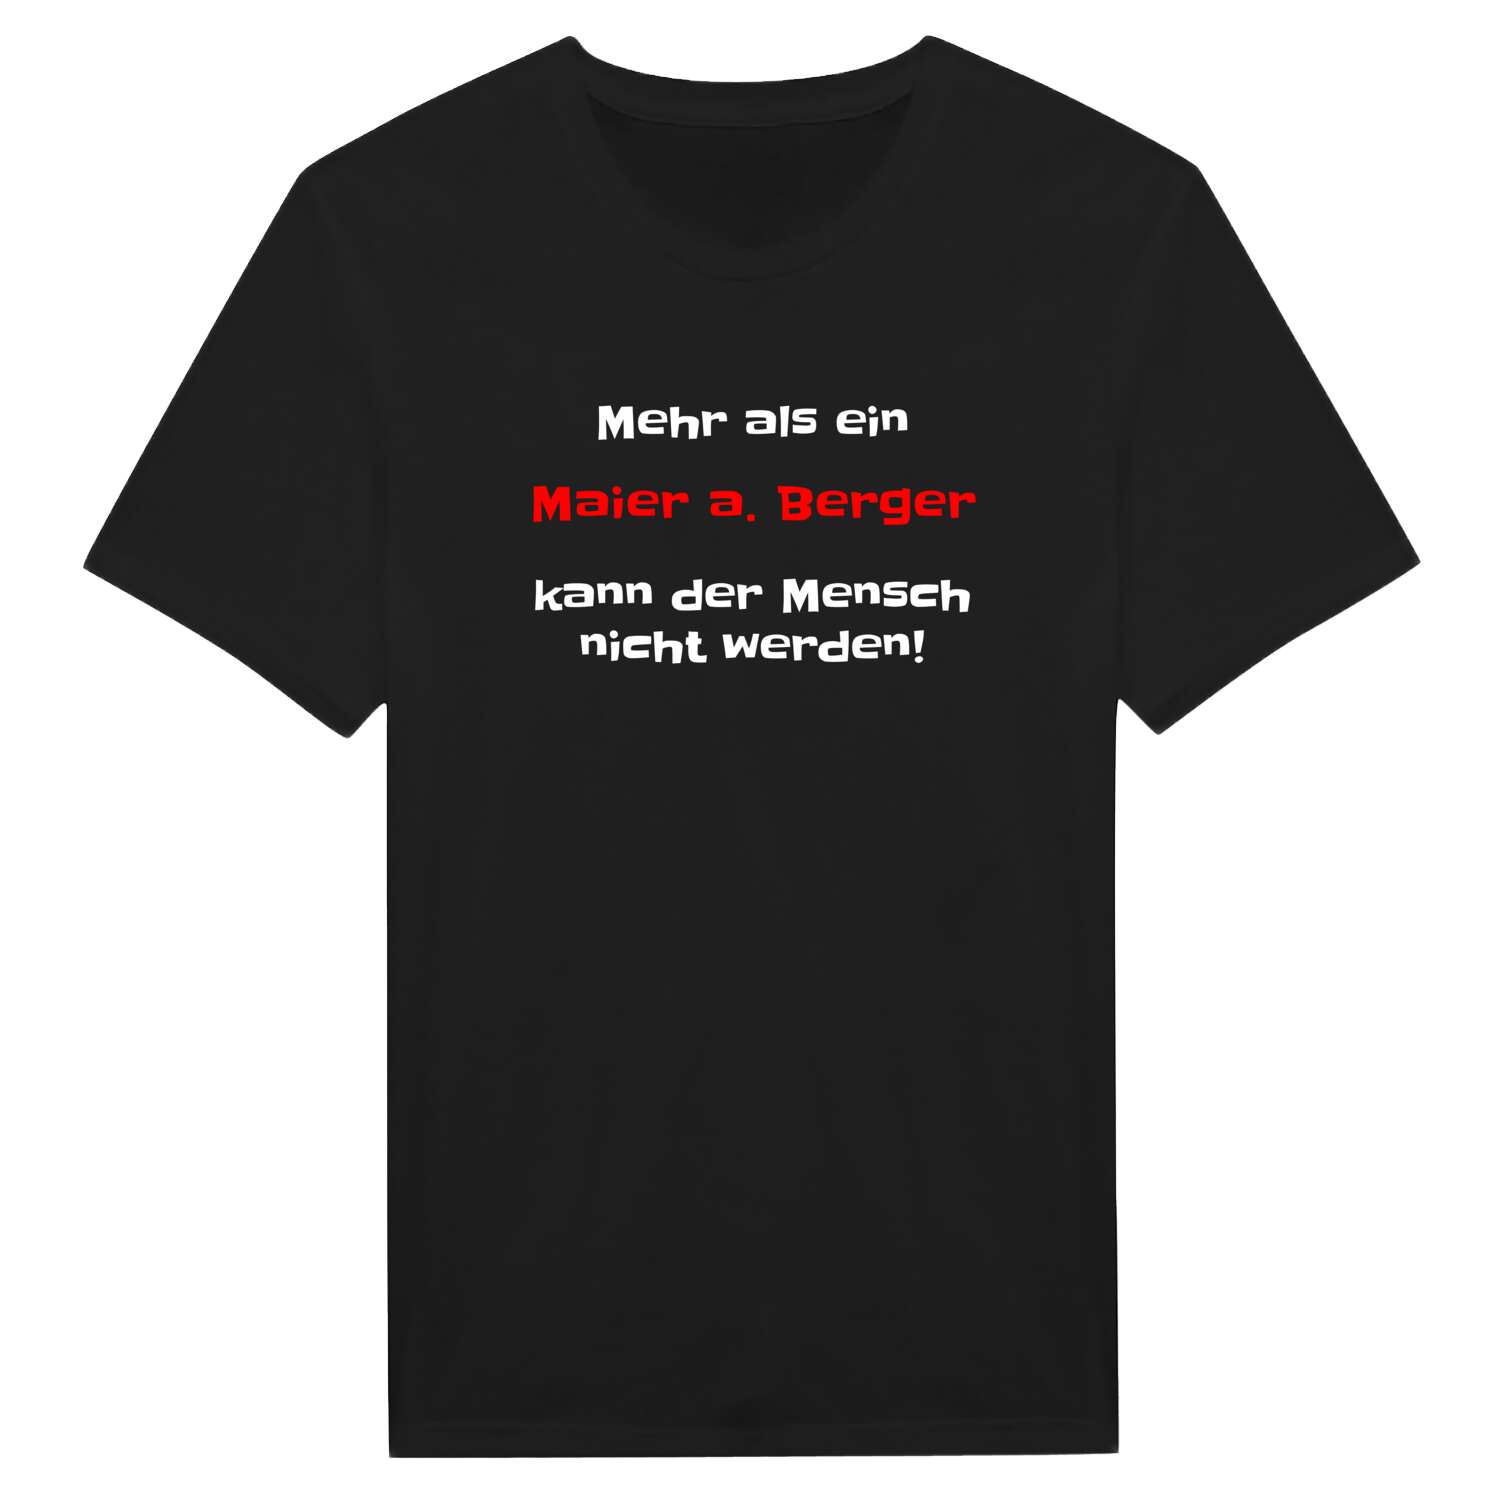 Maier a. Berg T-Shirt »Mehr als ein«